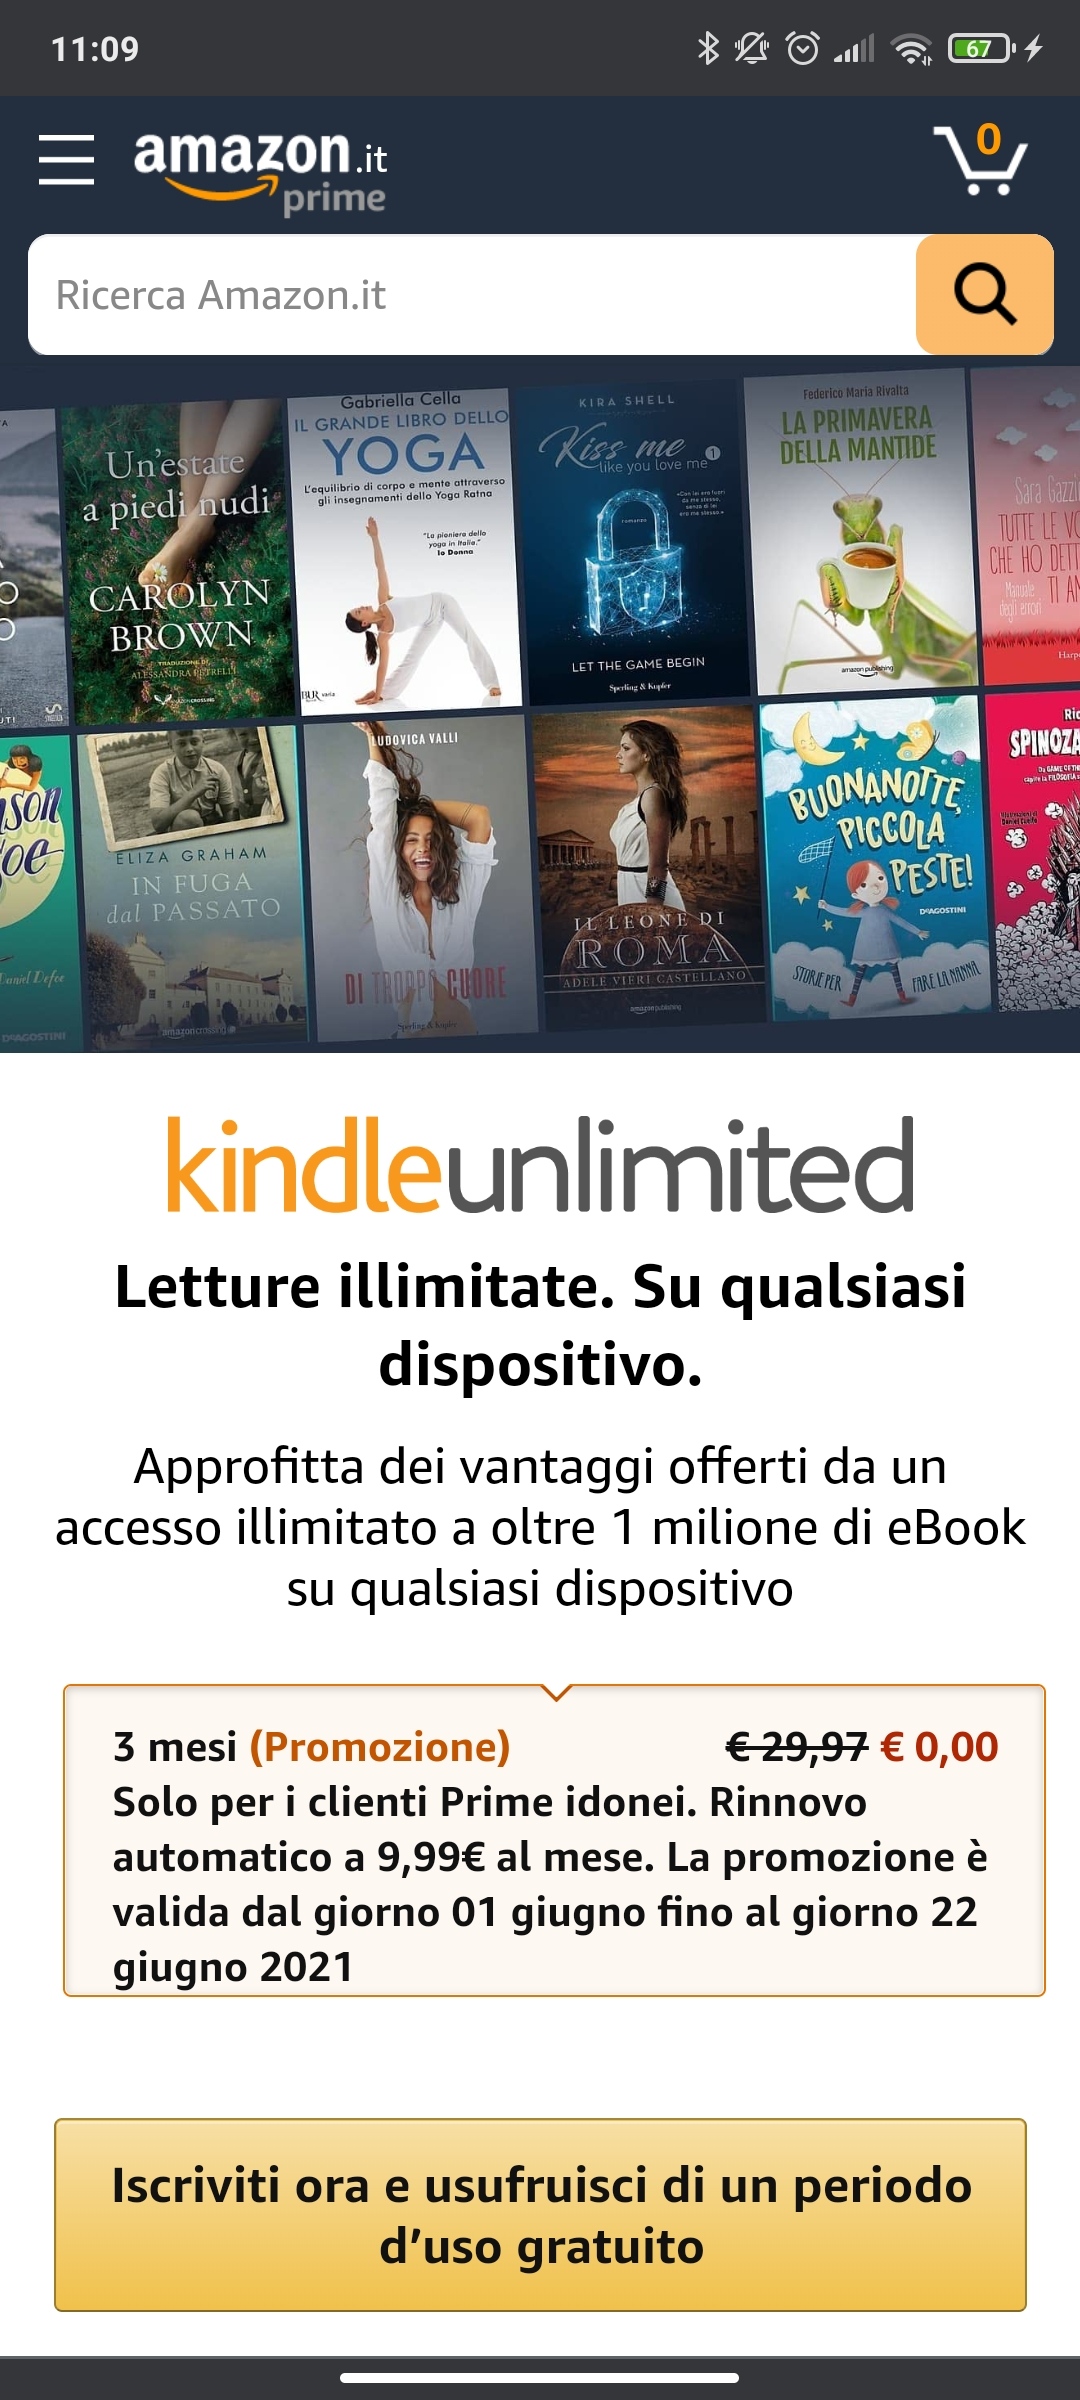 Kindle Unlimited gratis per 3 mesi, come sbloccare un autunno